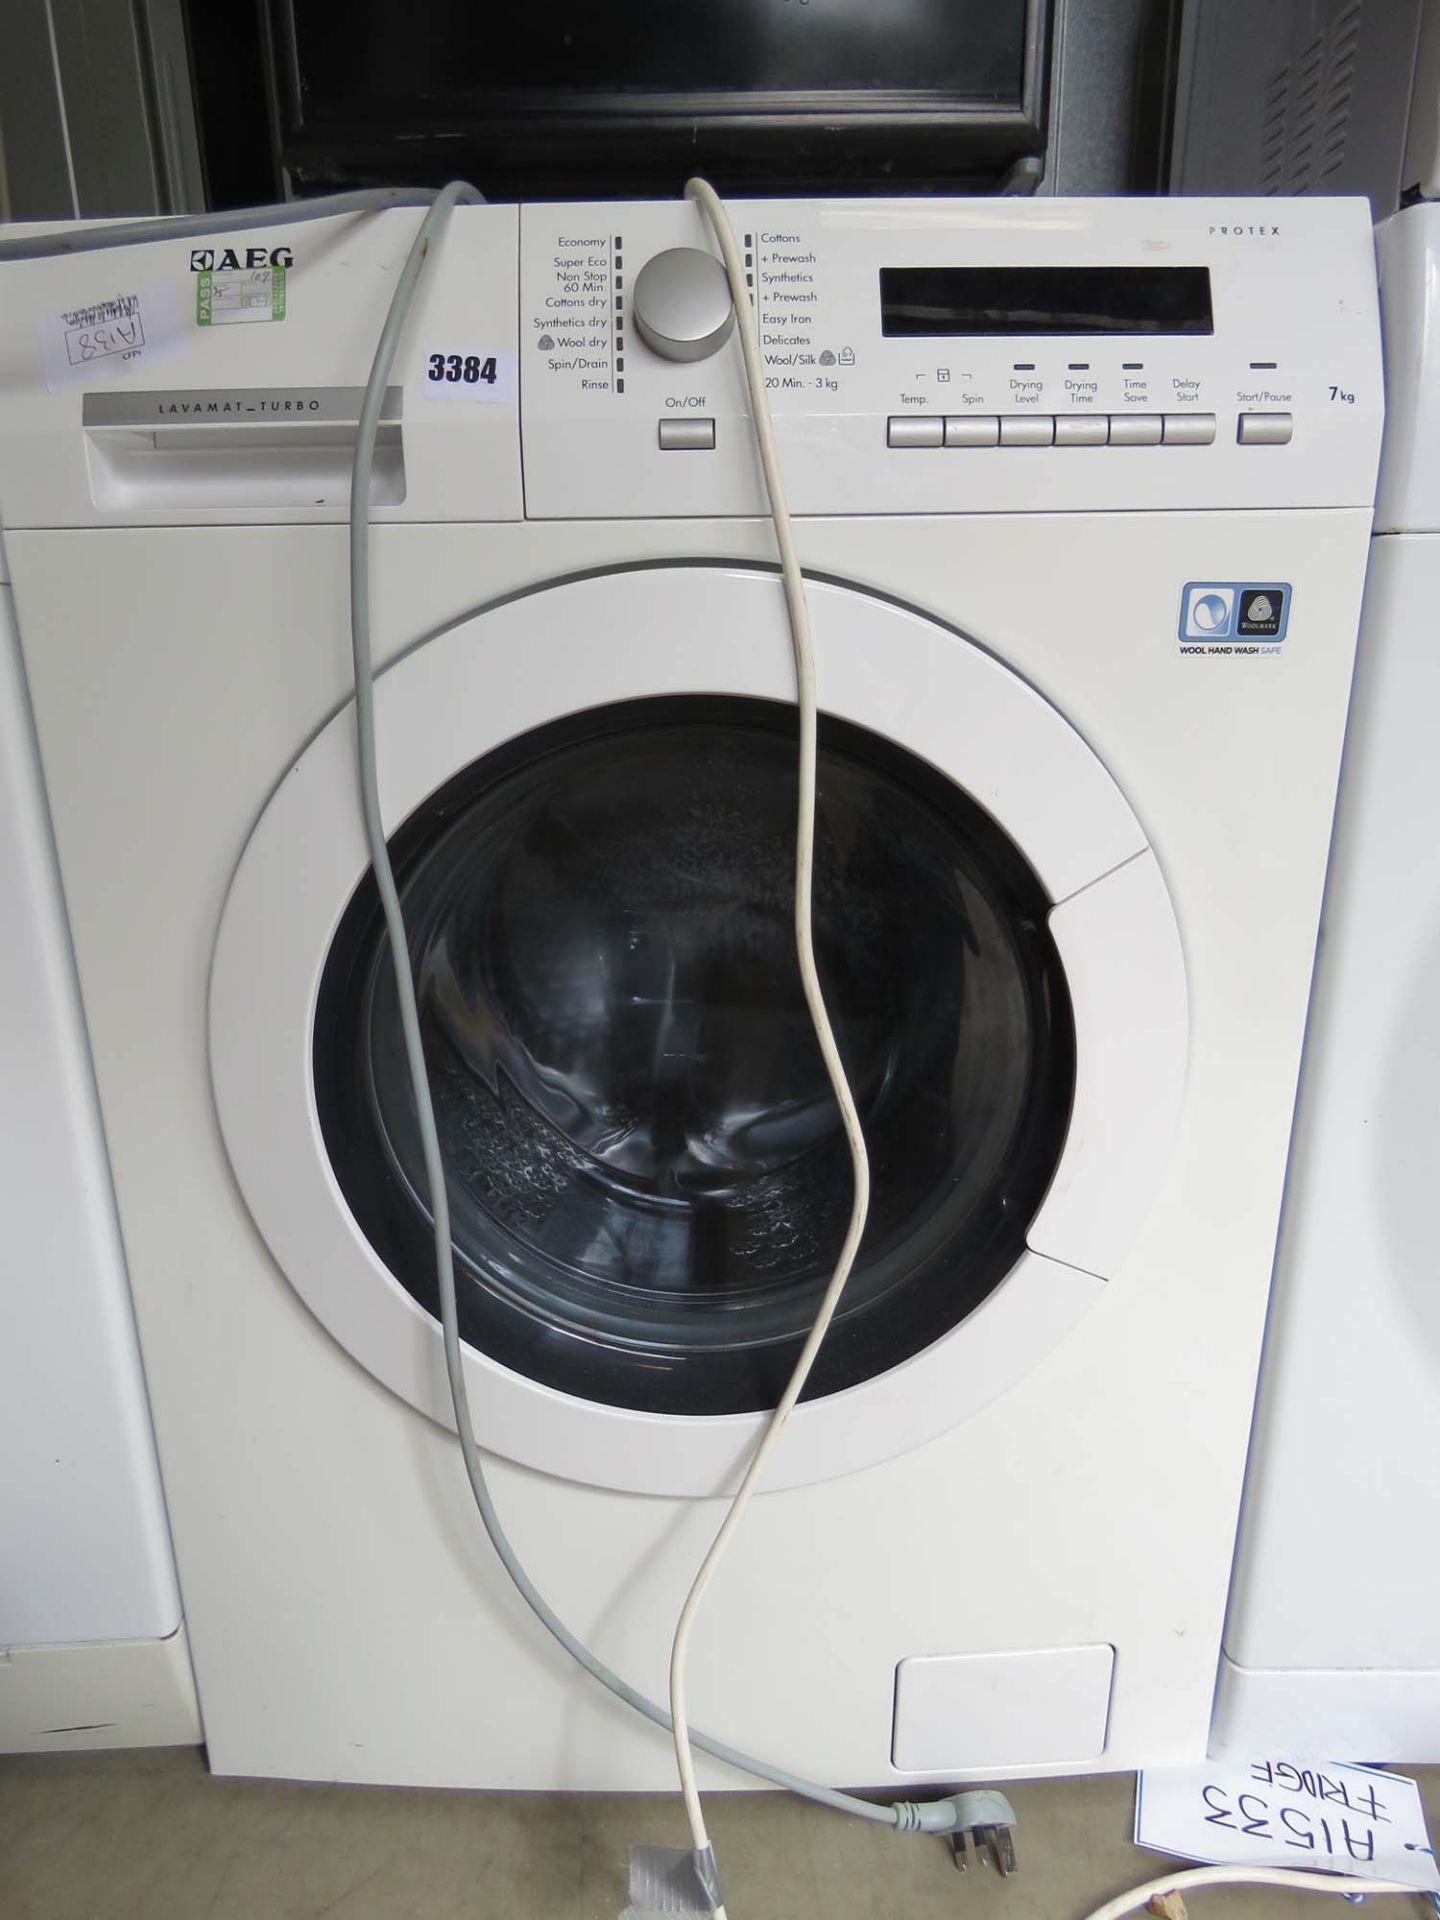 3449 AEG washing machine